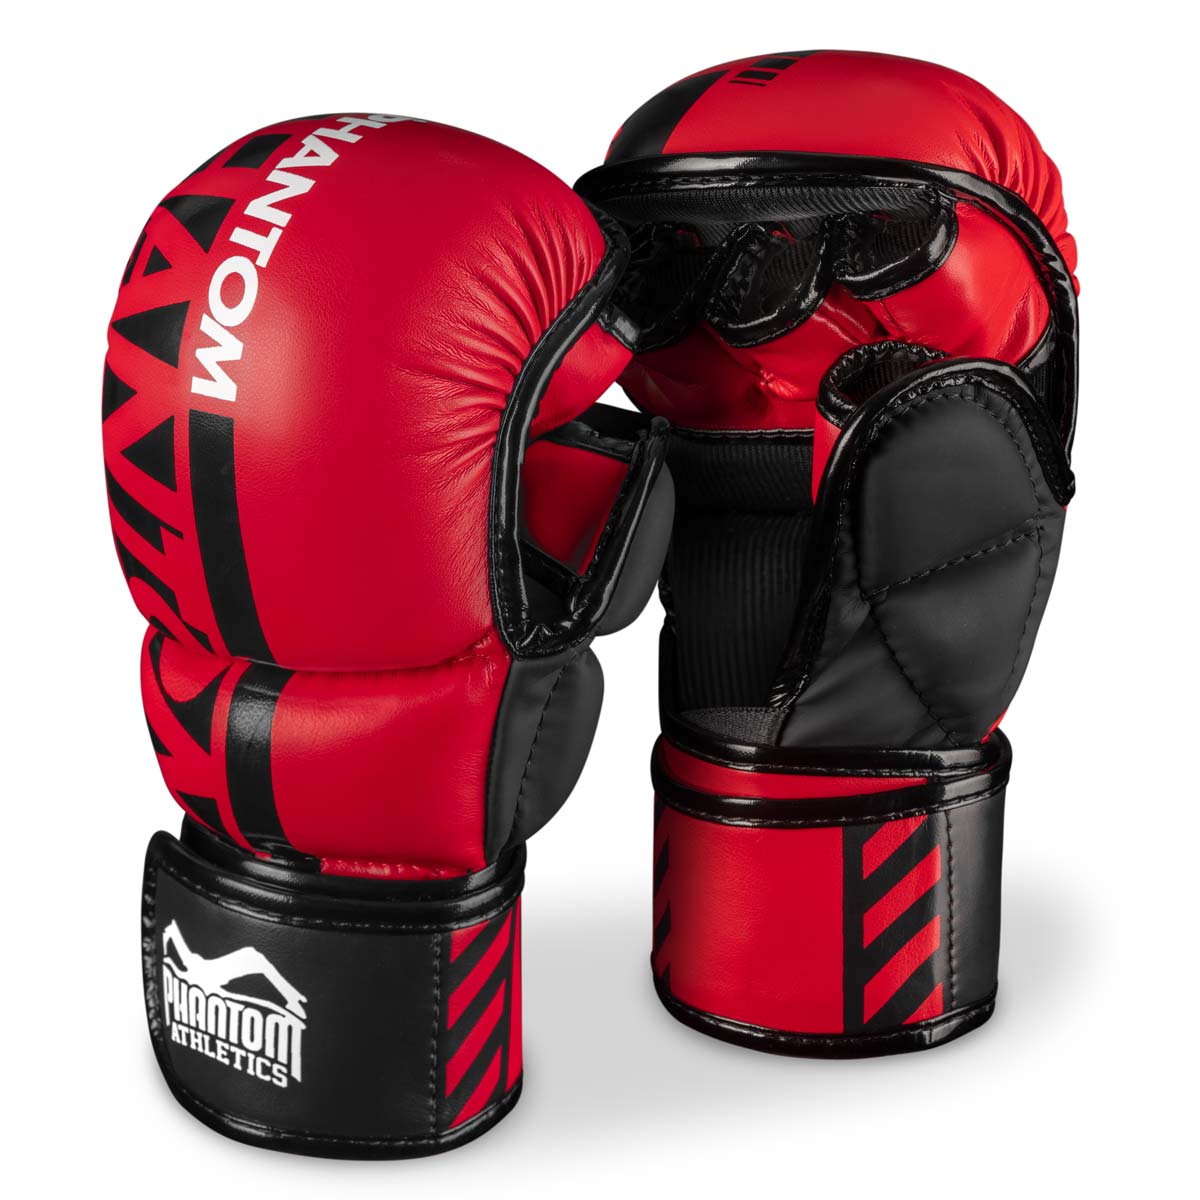 Τα γάντια sparring Phantom MMA. Το πιο ασφαλές γάντι για την προπόνησή σας στις πολεμικές τέχνες. Τώρα στο περιορισμένο κόκκινο χρώμα.